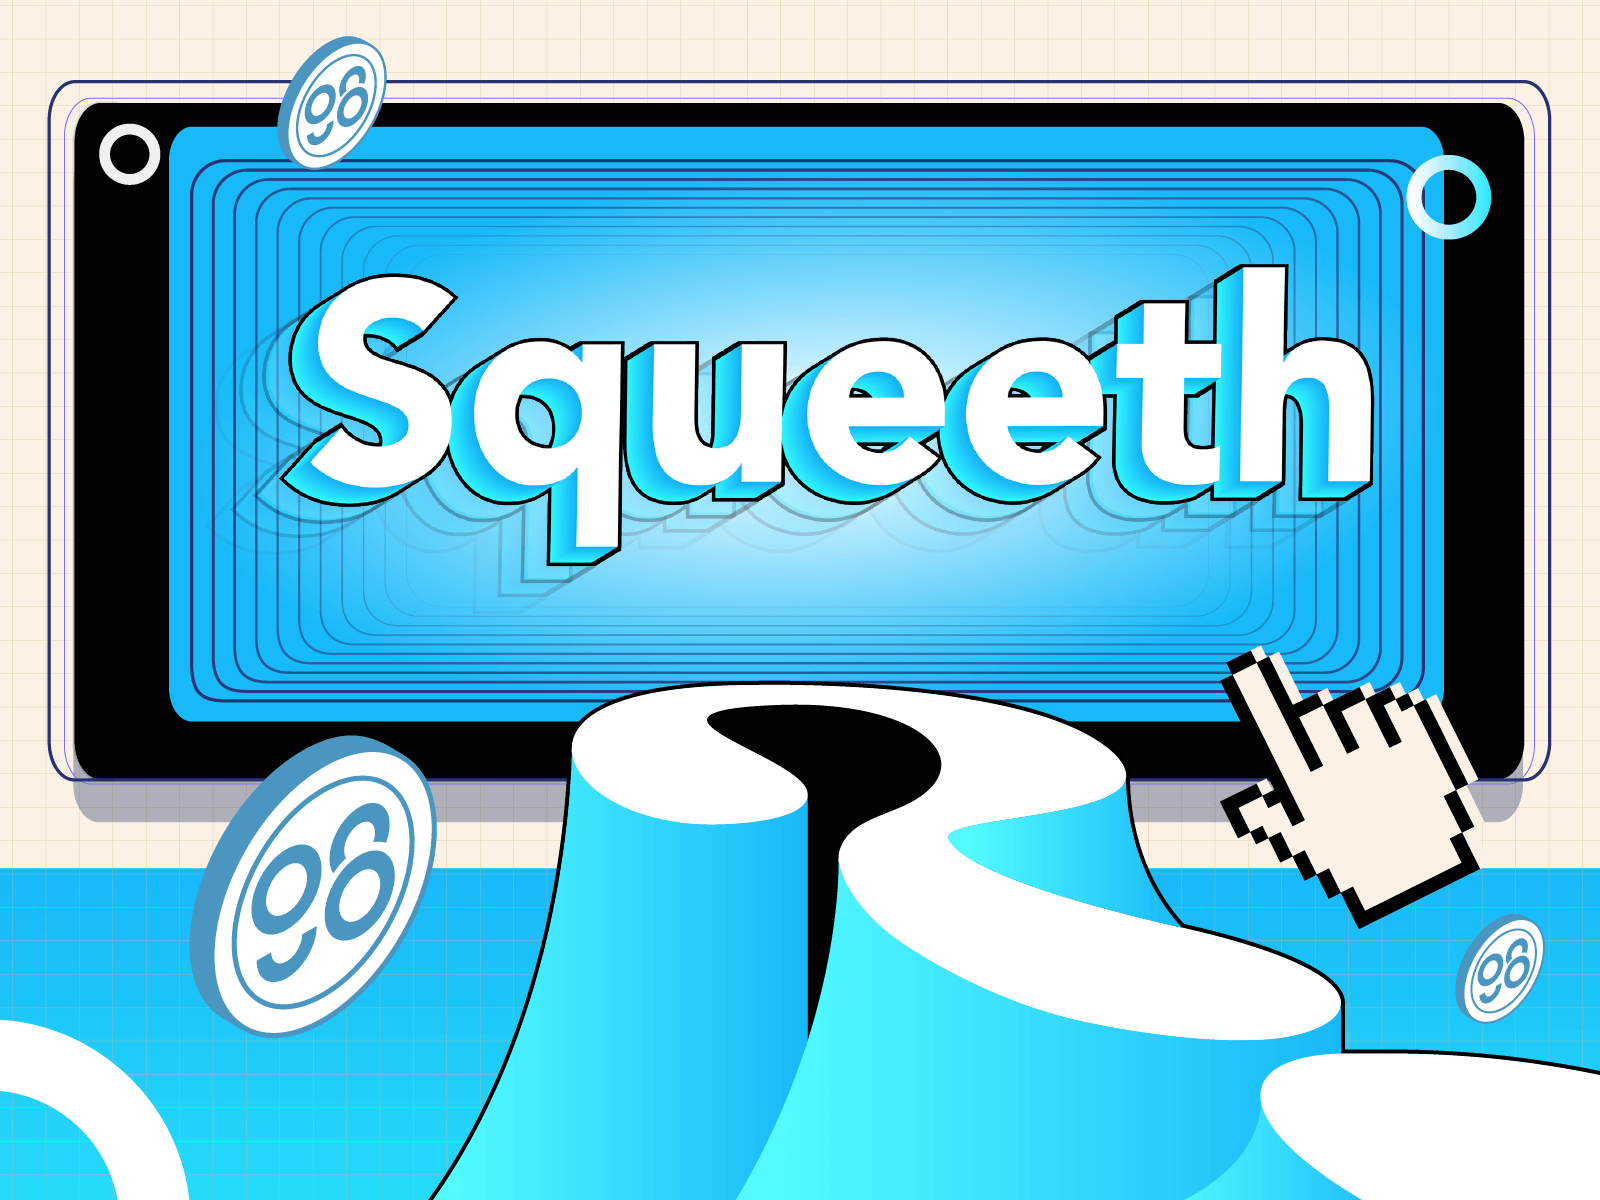 squeeth là gì